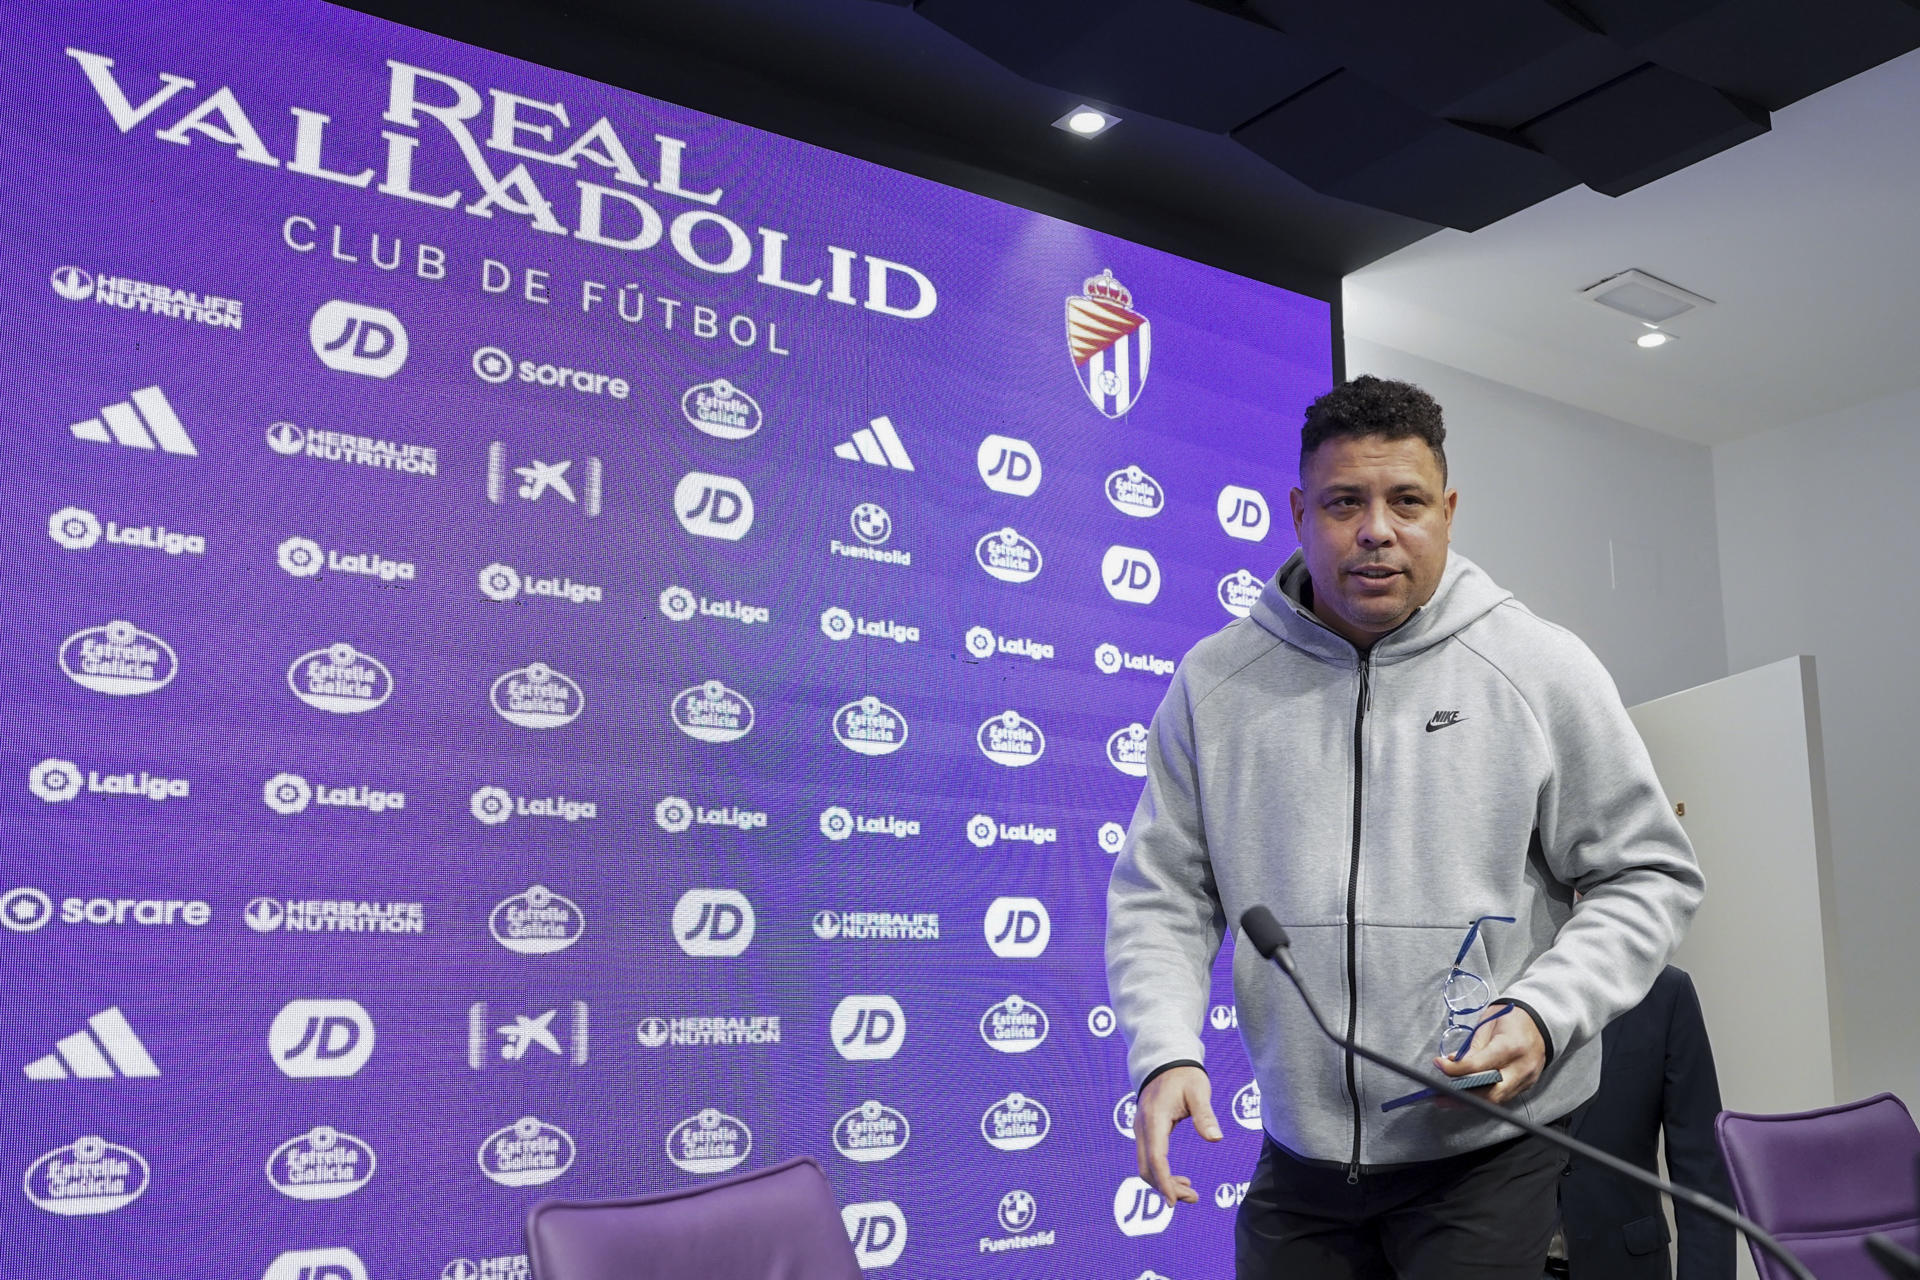 -El presidente del Real Valladolid, Ronaldo Nazário, comparece este lunes en rueda de prensa tras cerrar ayer el equipo la temporada con un descenso a segunda categoría.EFE/Nacho Gallego